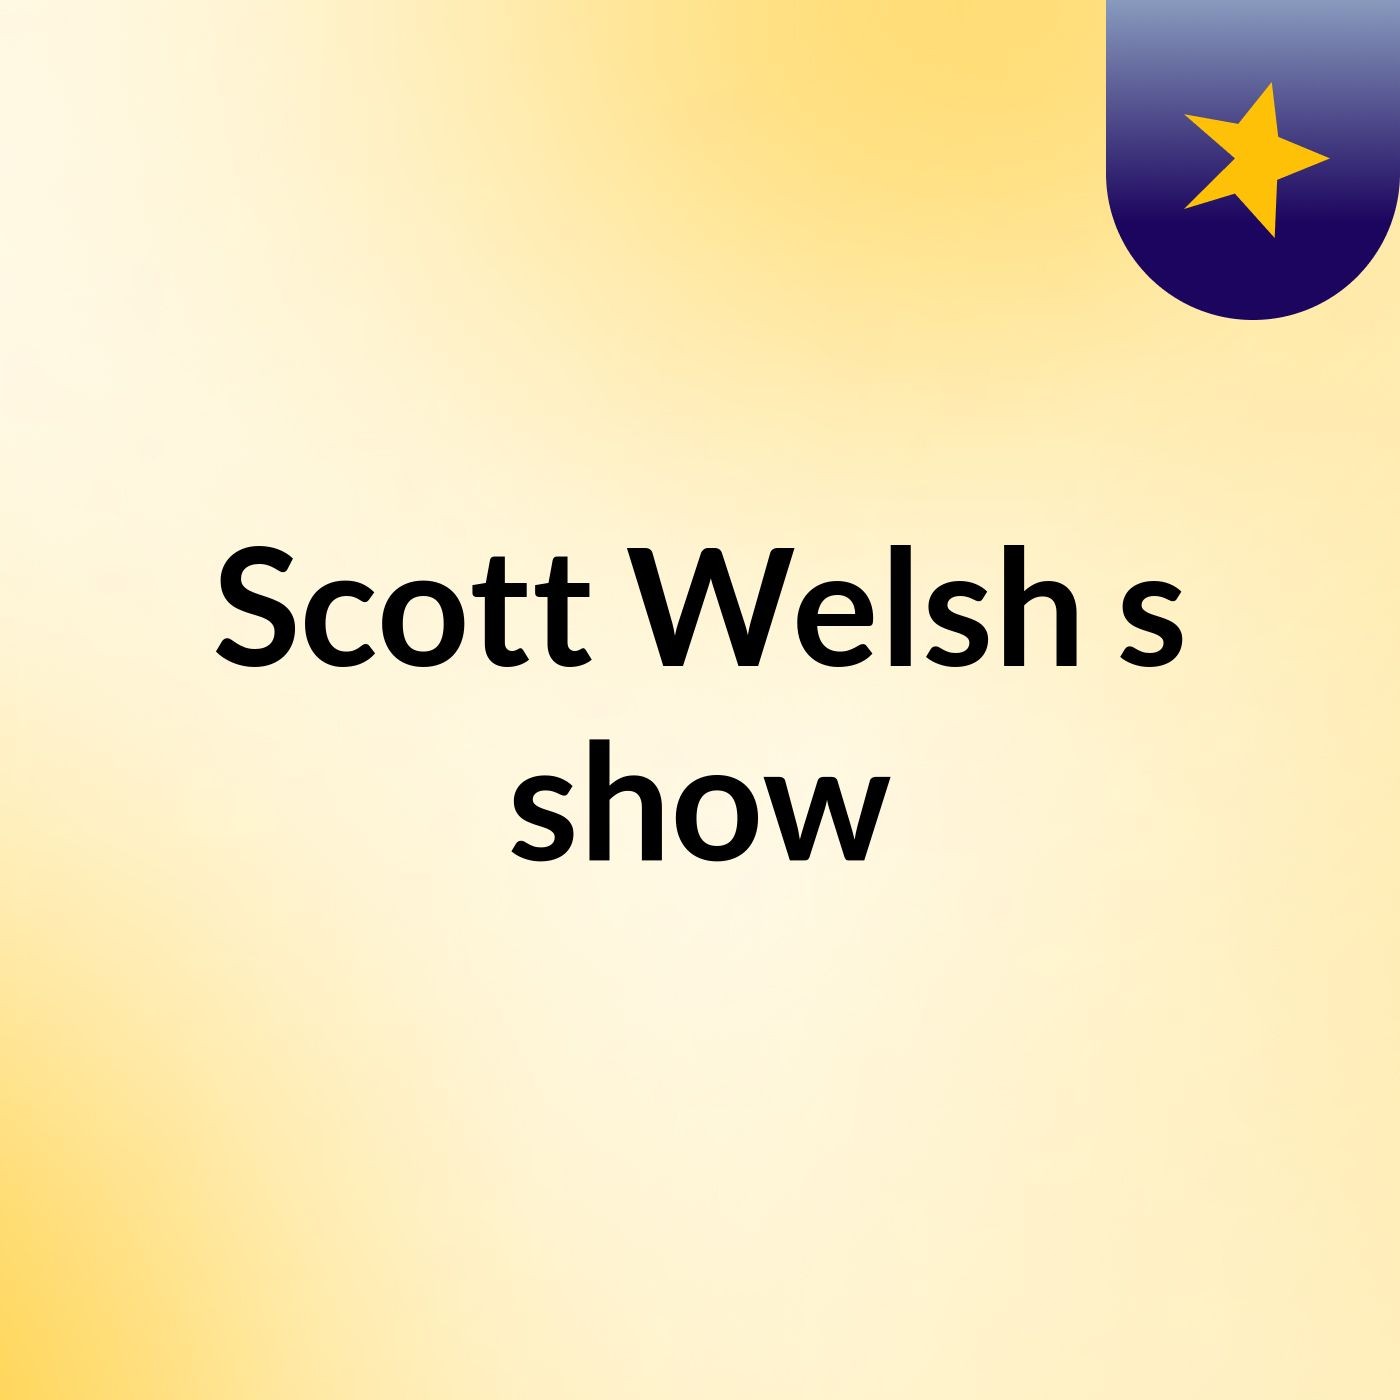 Scott Welsh's show